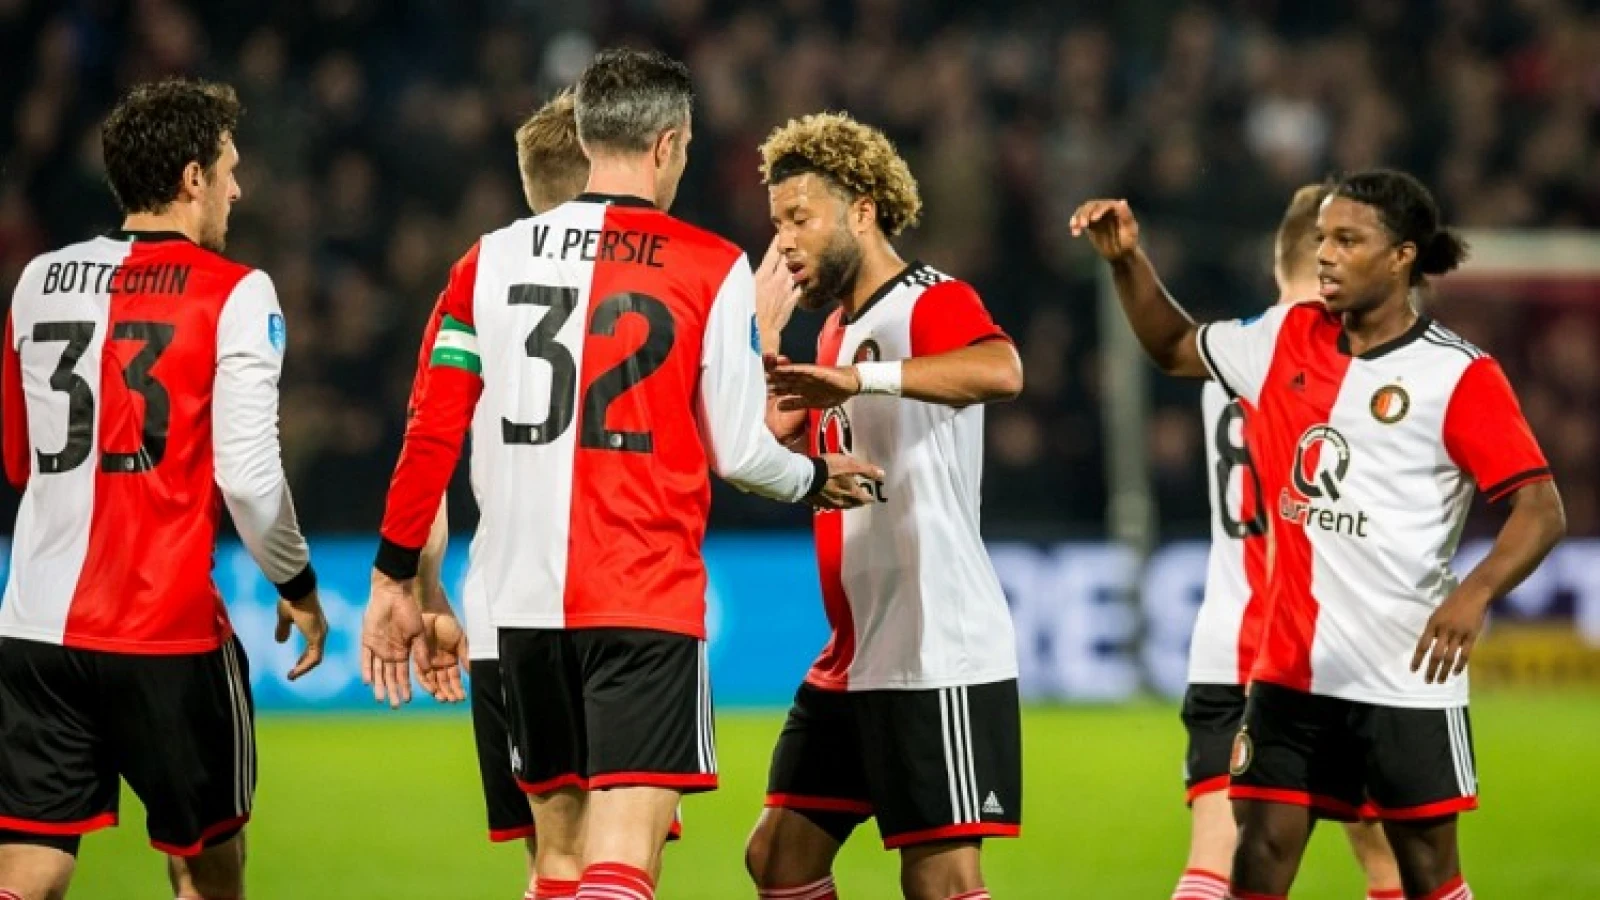 OVERZICHT | Feyenoord kan deze tegenstanders loten voor de volgende ronde in de TOTO KNVB Beker